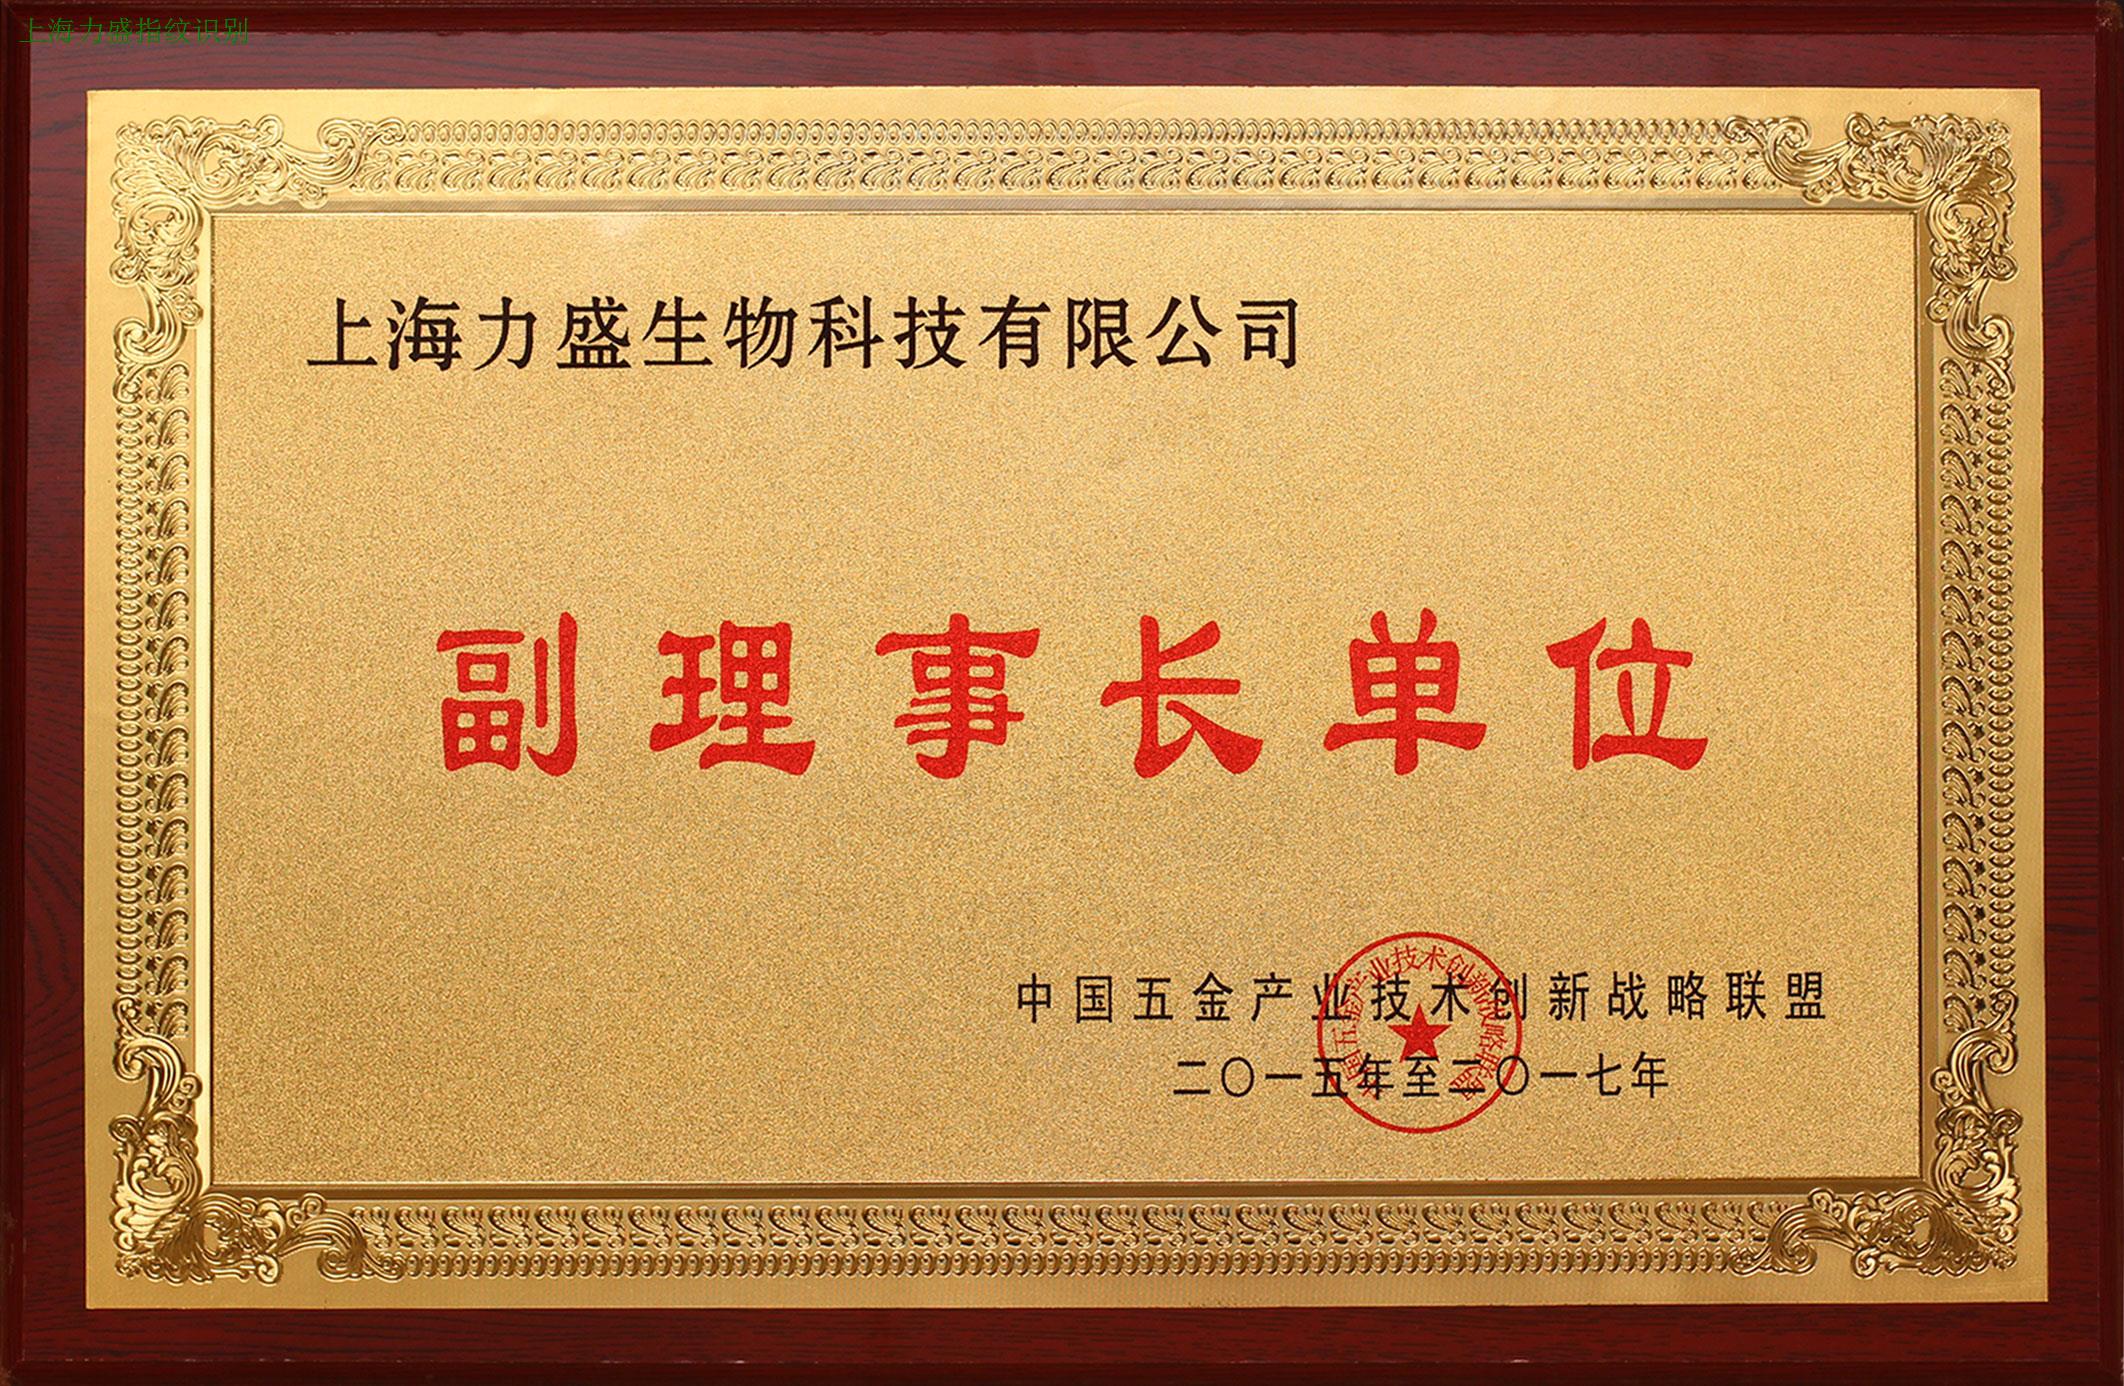 上海力盛荣获中国五金产业创新战略联盟副理事长单位